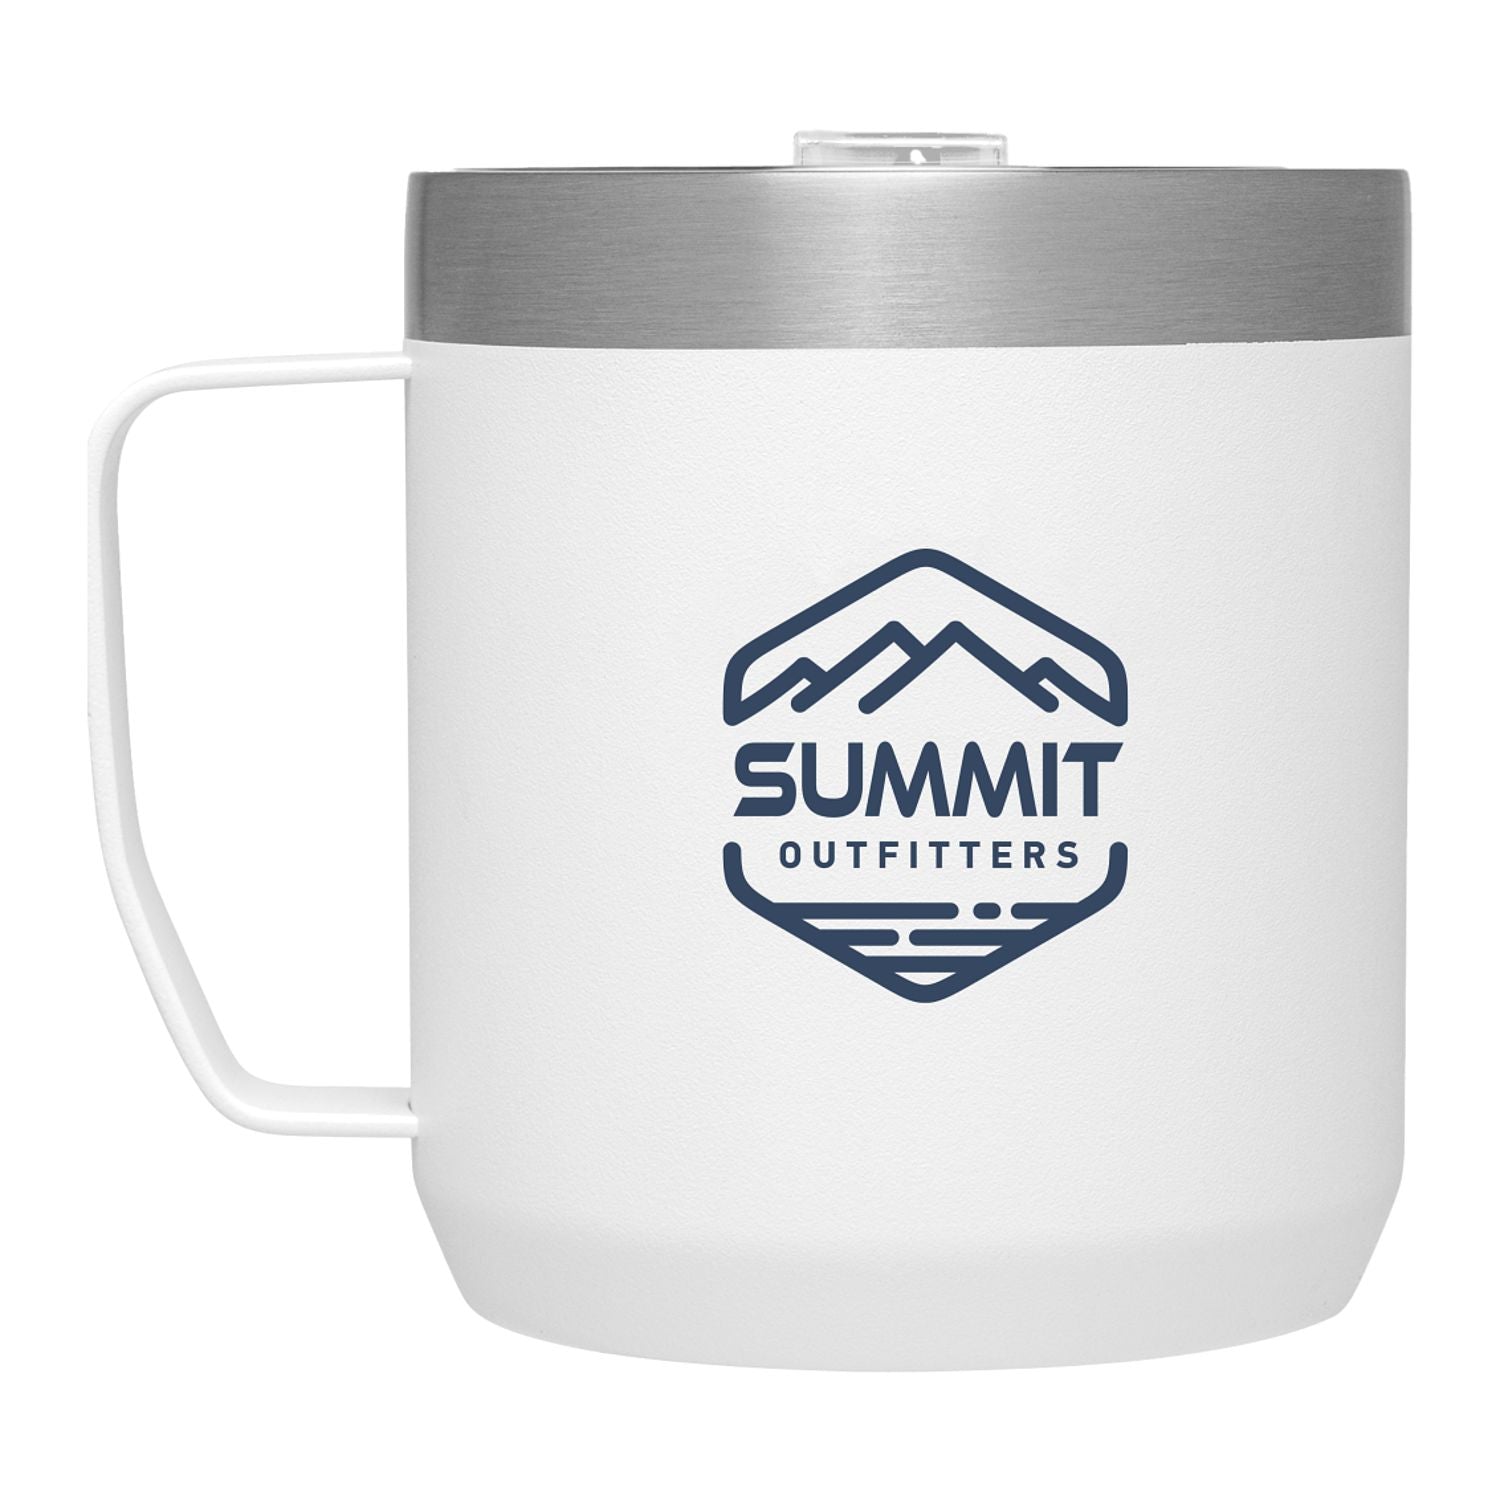 Add Your Logo: Stanley Legendary Camp Mug 12 oz – Baudville